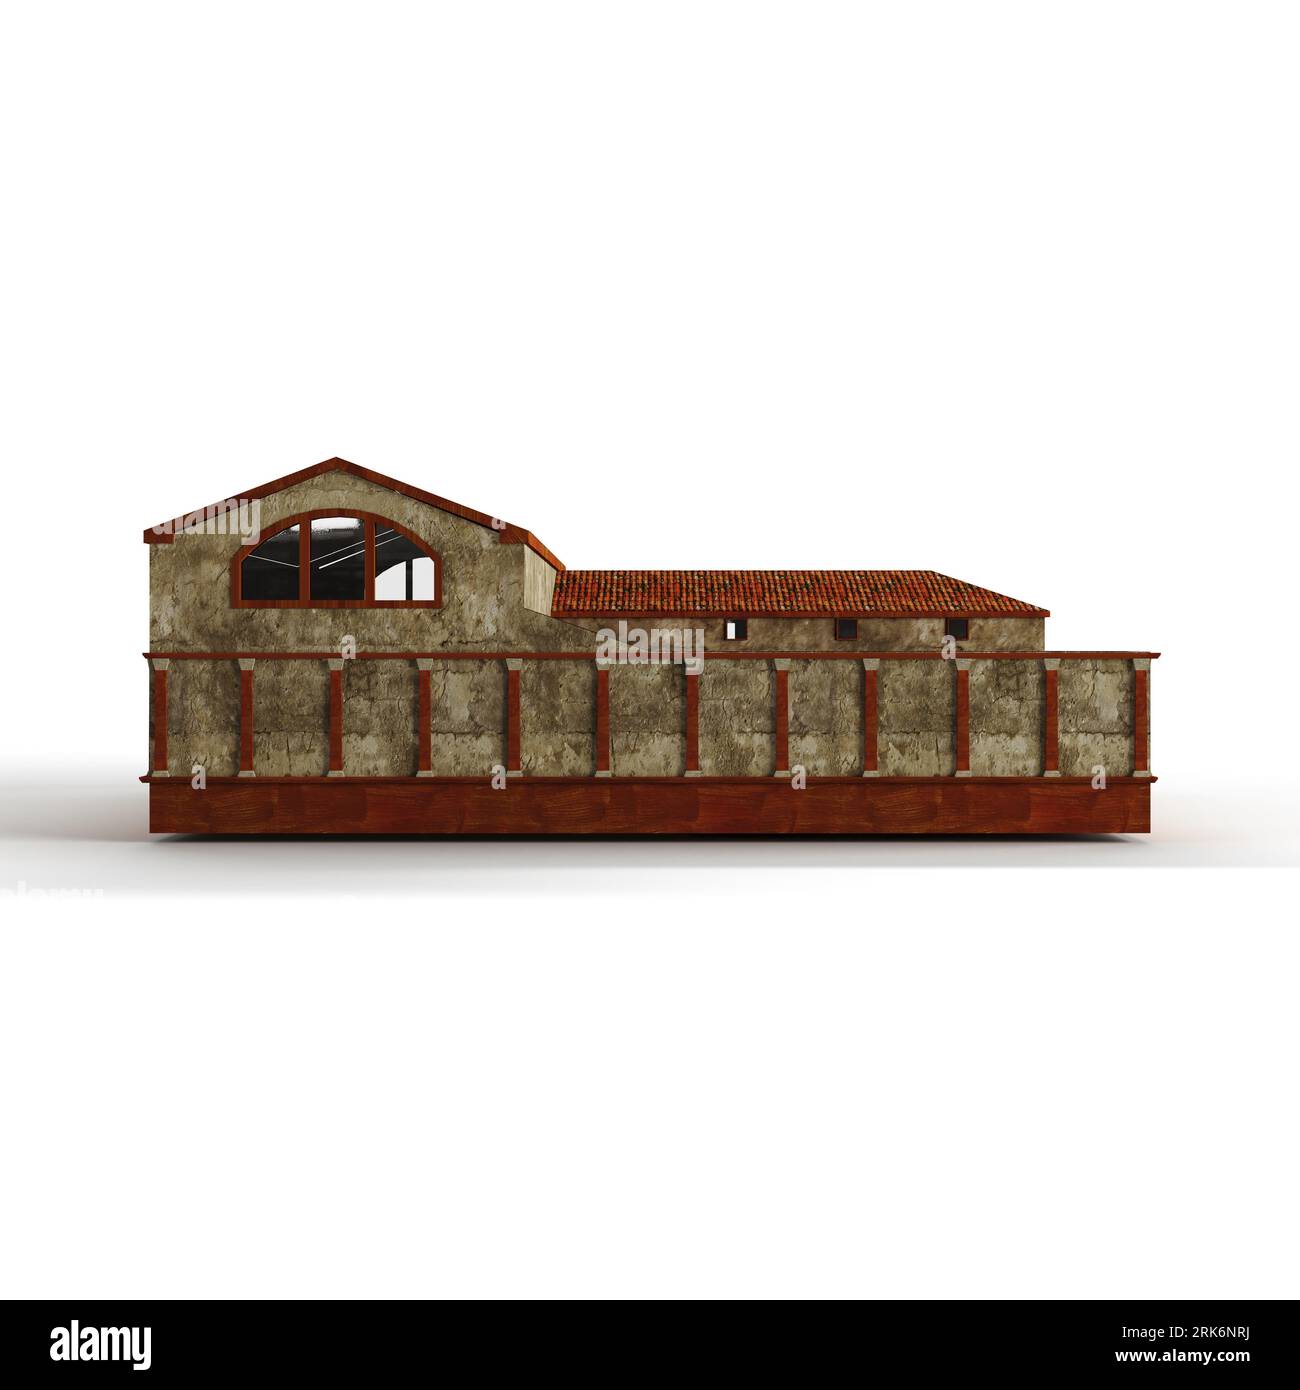 Ein 3D-Rendering eines mehrstöckigen Gebäudemodells mit verschiedenen Fenstern, die auf einem weißen Hintergrund isoliert sind Stockfoto